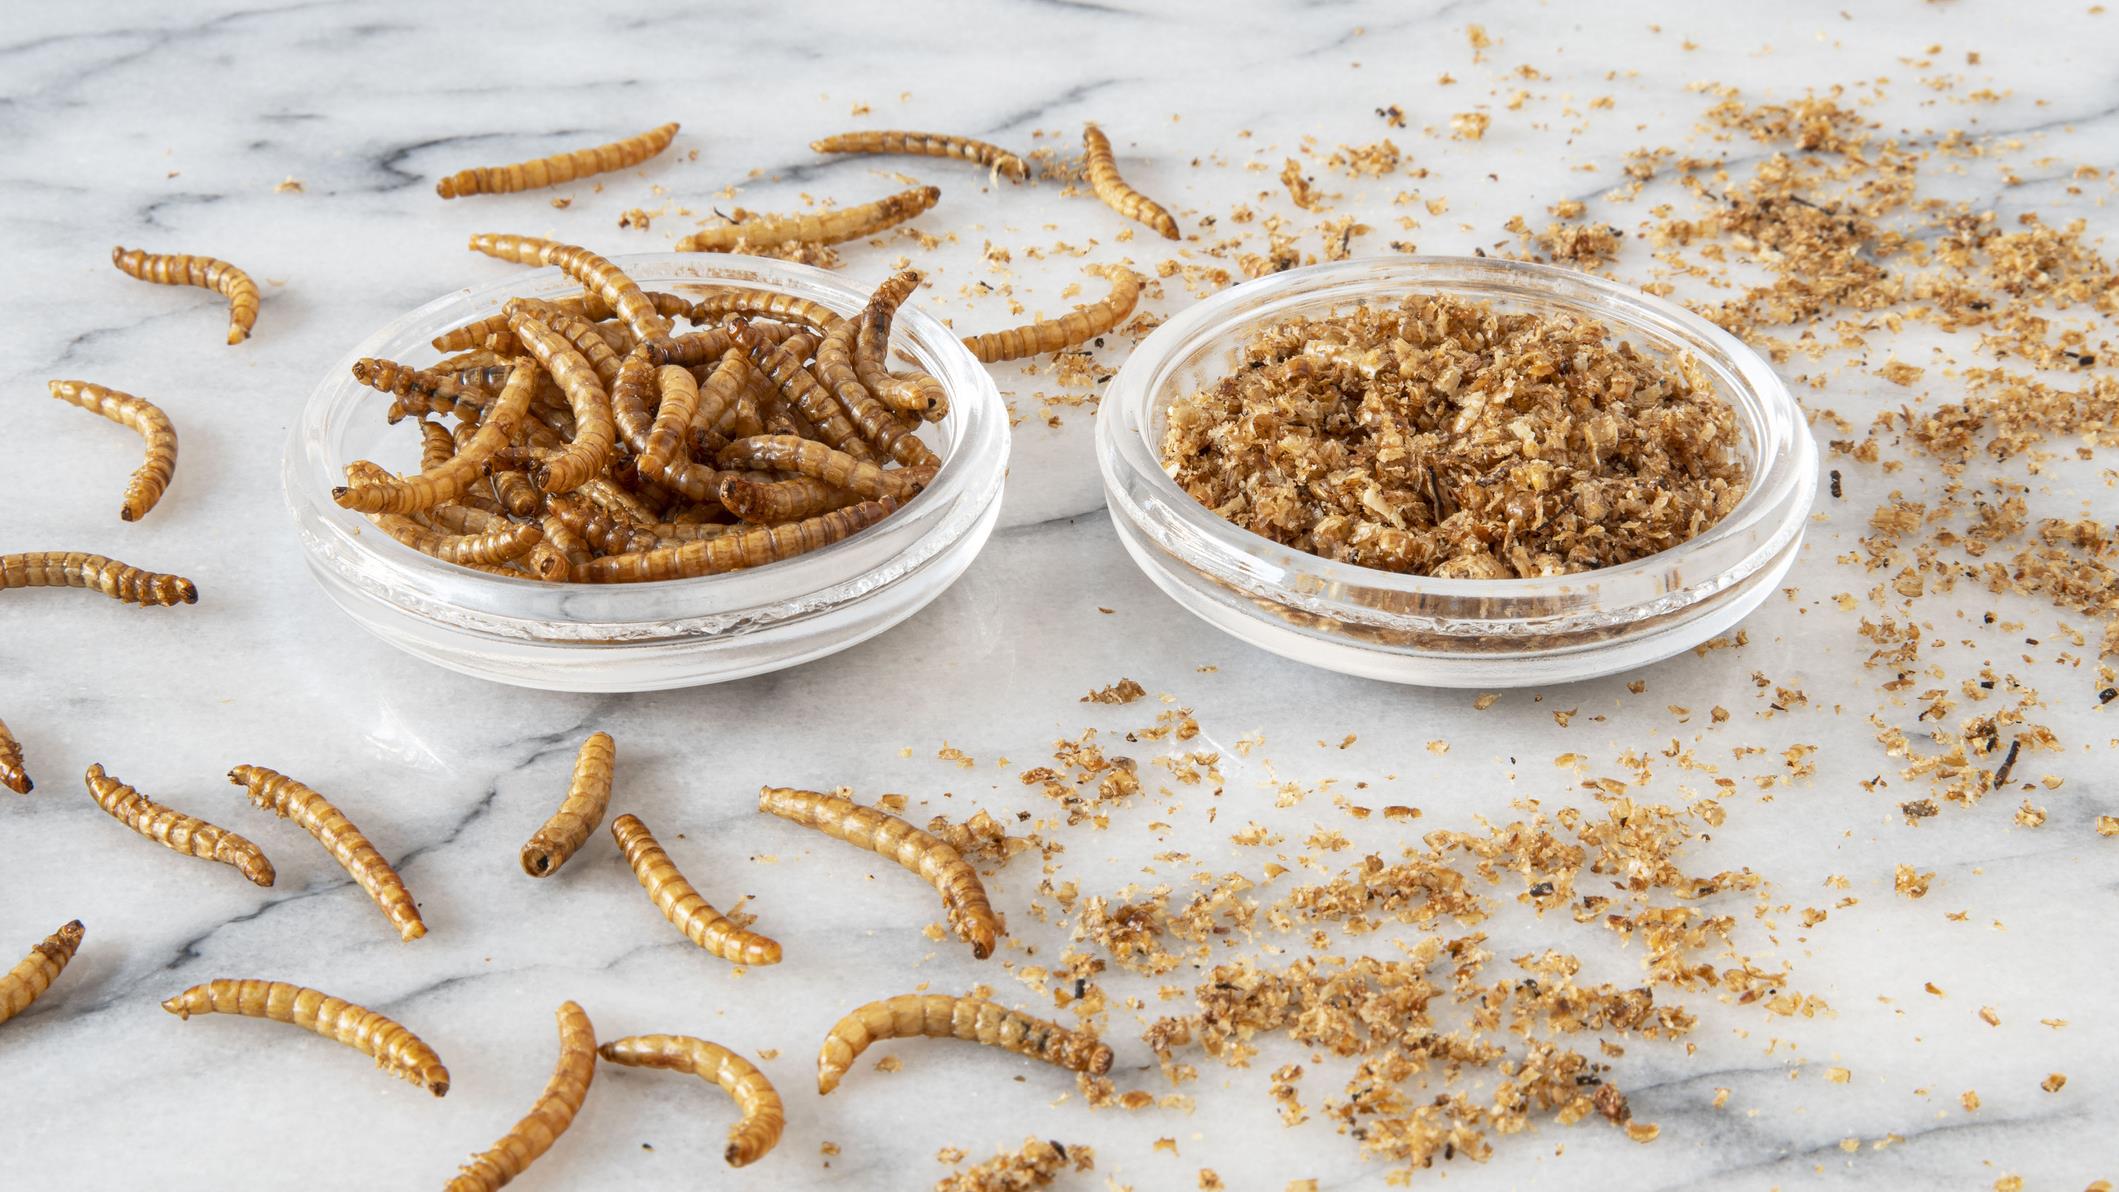 Manger des insectes comestibles: Entre peur et normalité